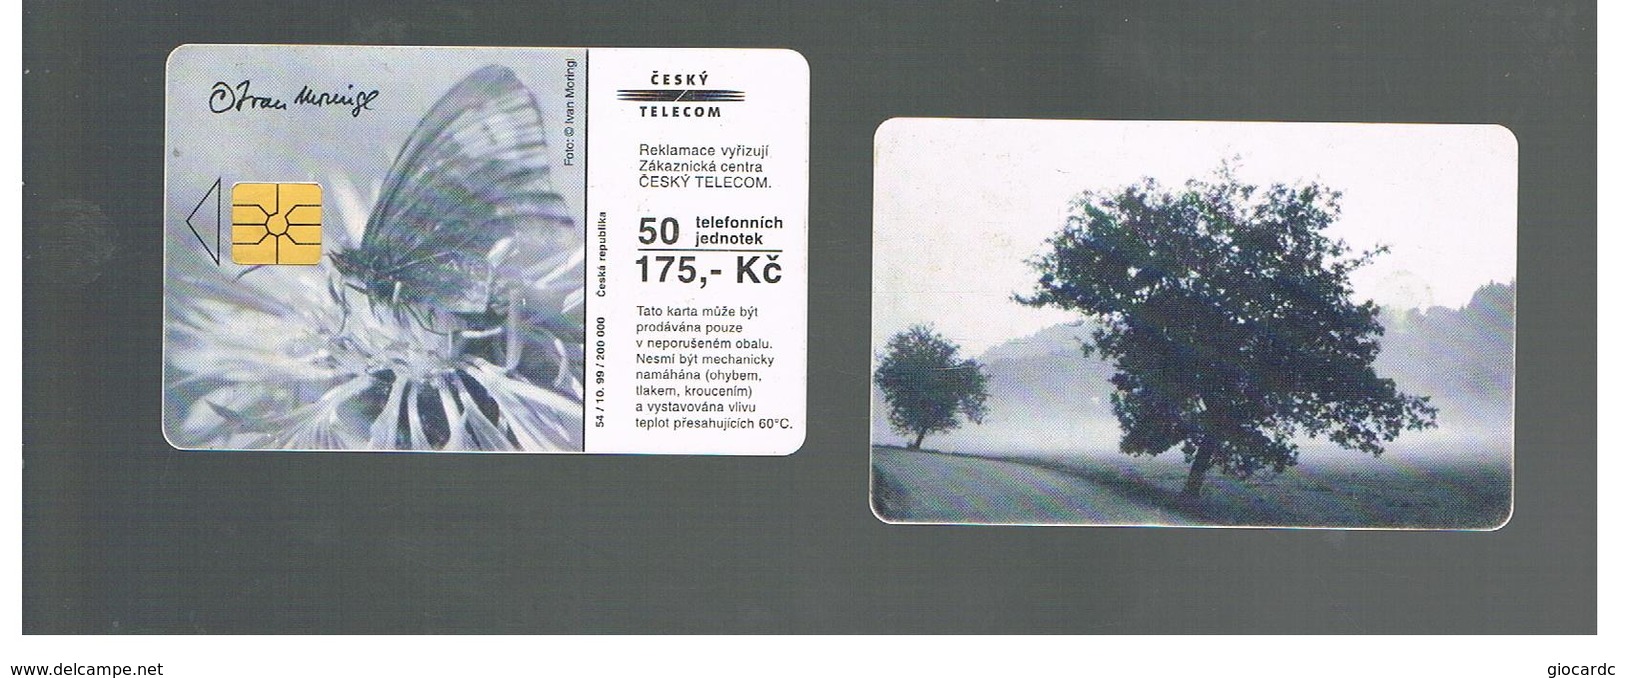 REPUBBLICA CECA (CZECH REPUBLIC) -  1999  BUTTERFLY, TREE     - USED - RIF. 10111 - Farfalle